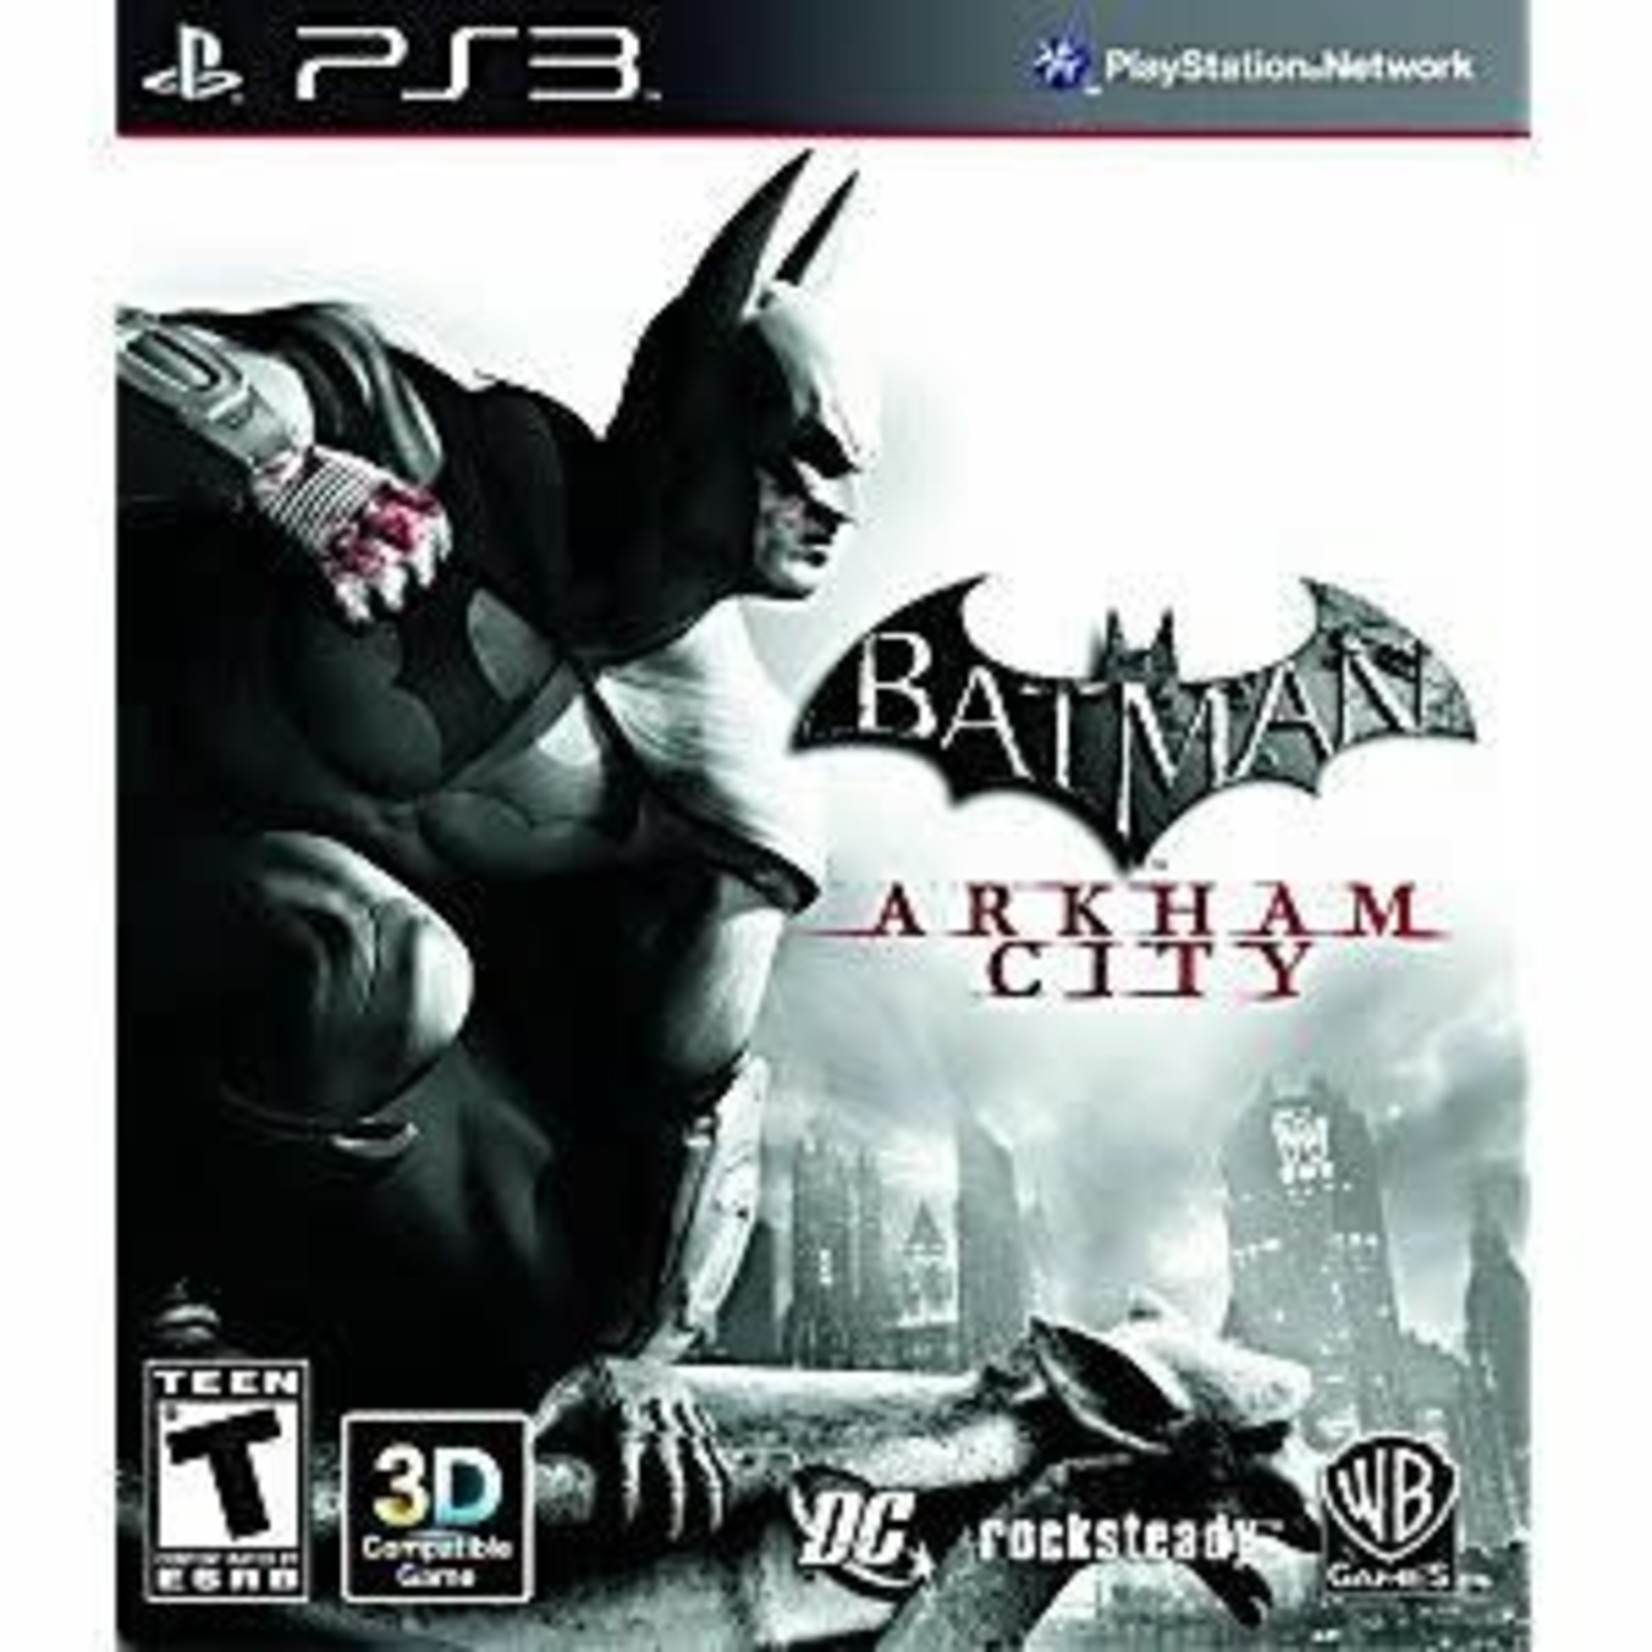 PS3U-Batman: Arkham City